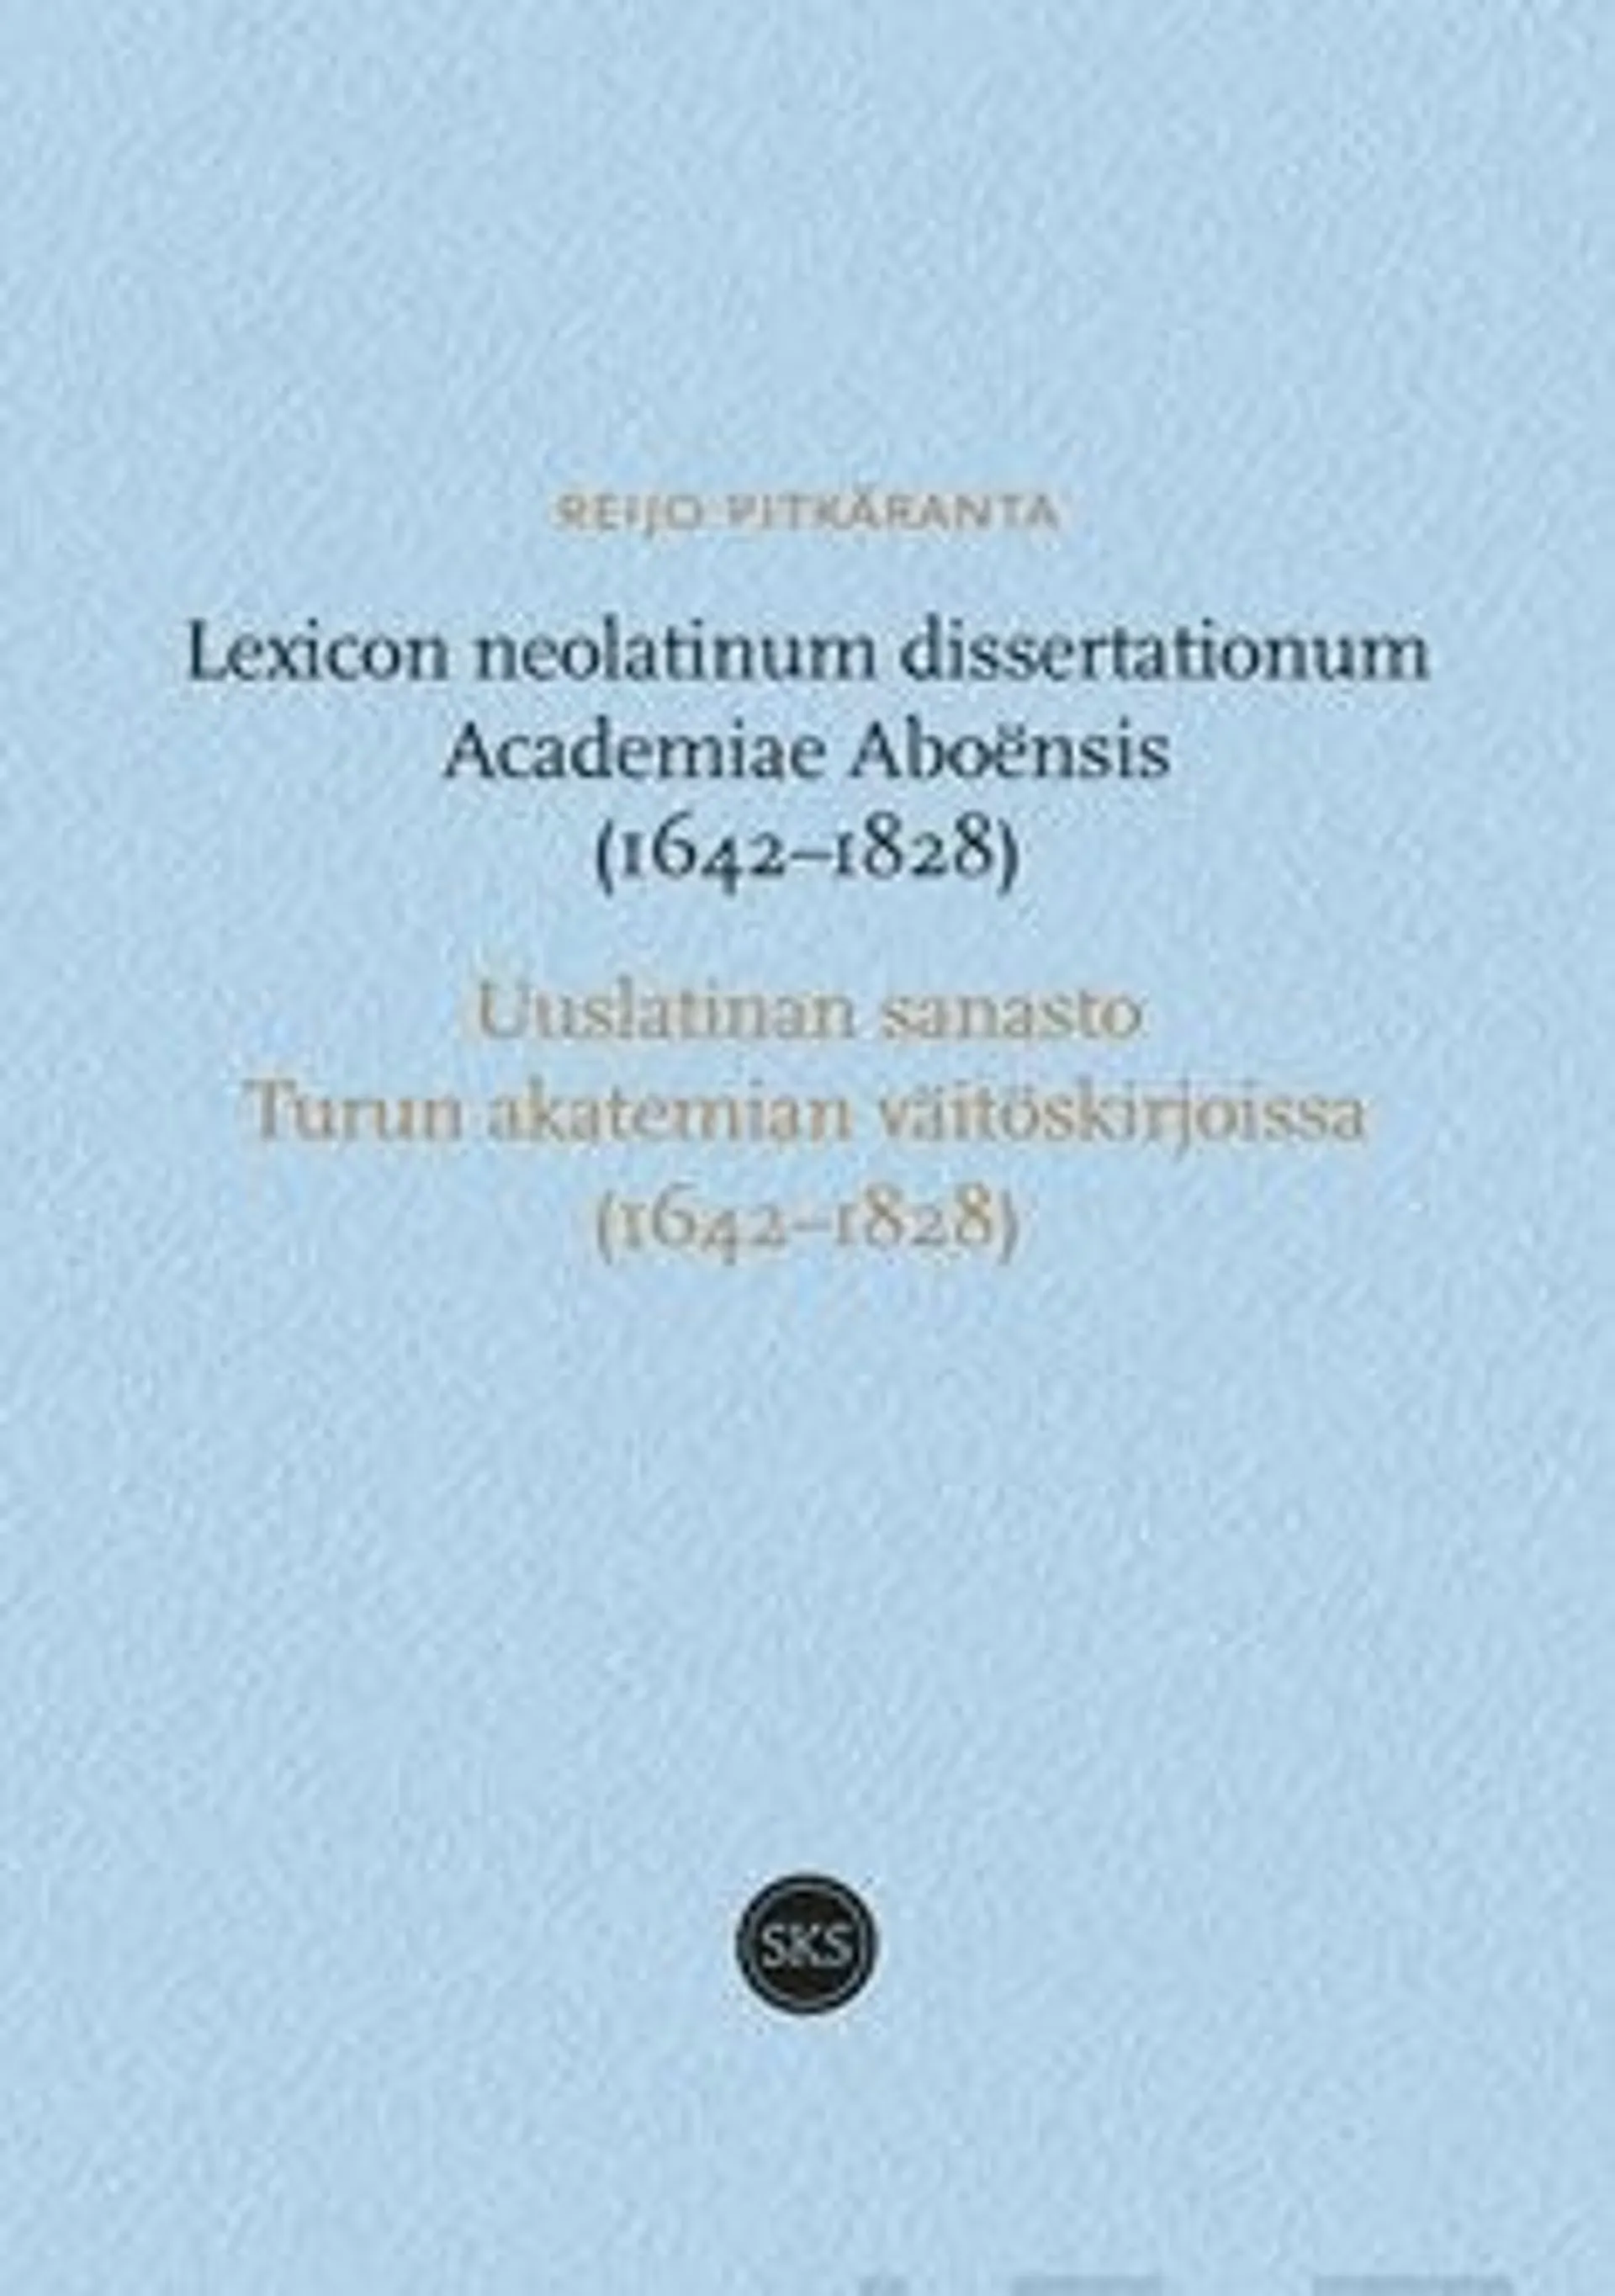 Pitkäranta, Lexicon neolatinum dissertationum Academiae Aboensis 1642-1828